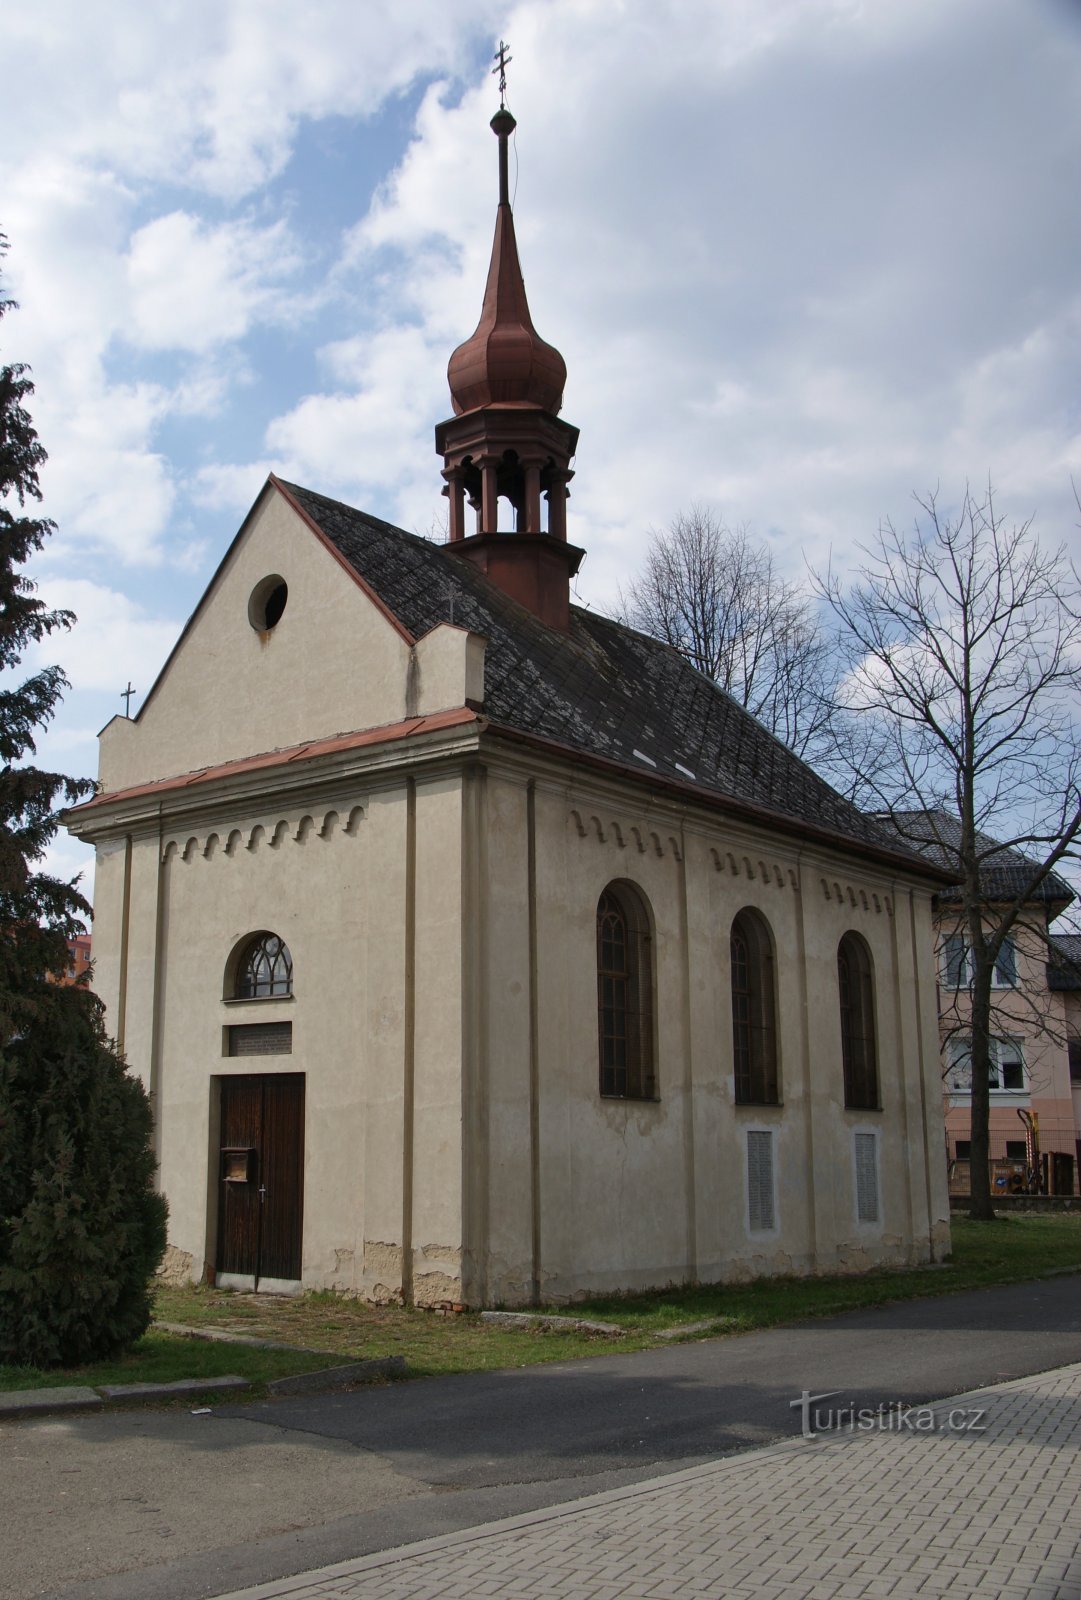 Dolní Temenice (Šumperk) – a Szent Család kápolna